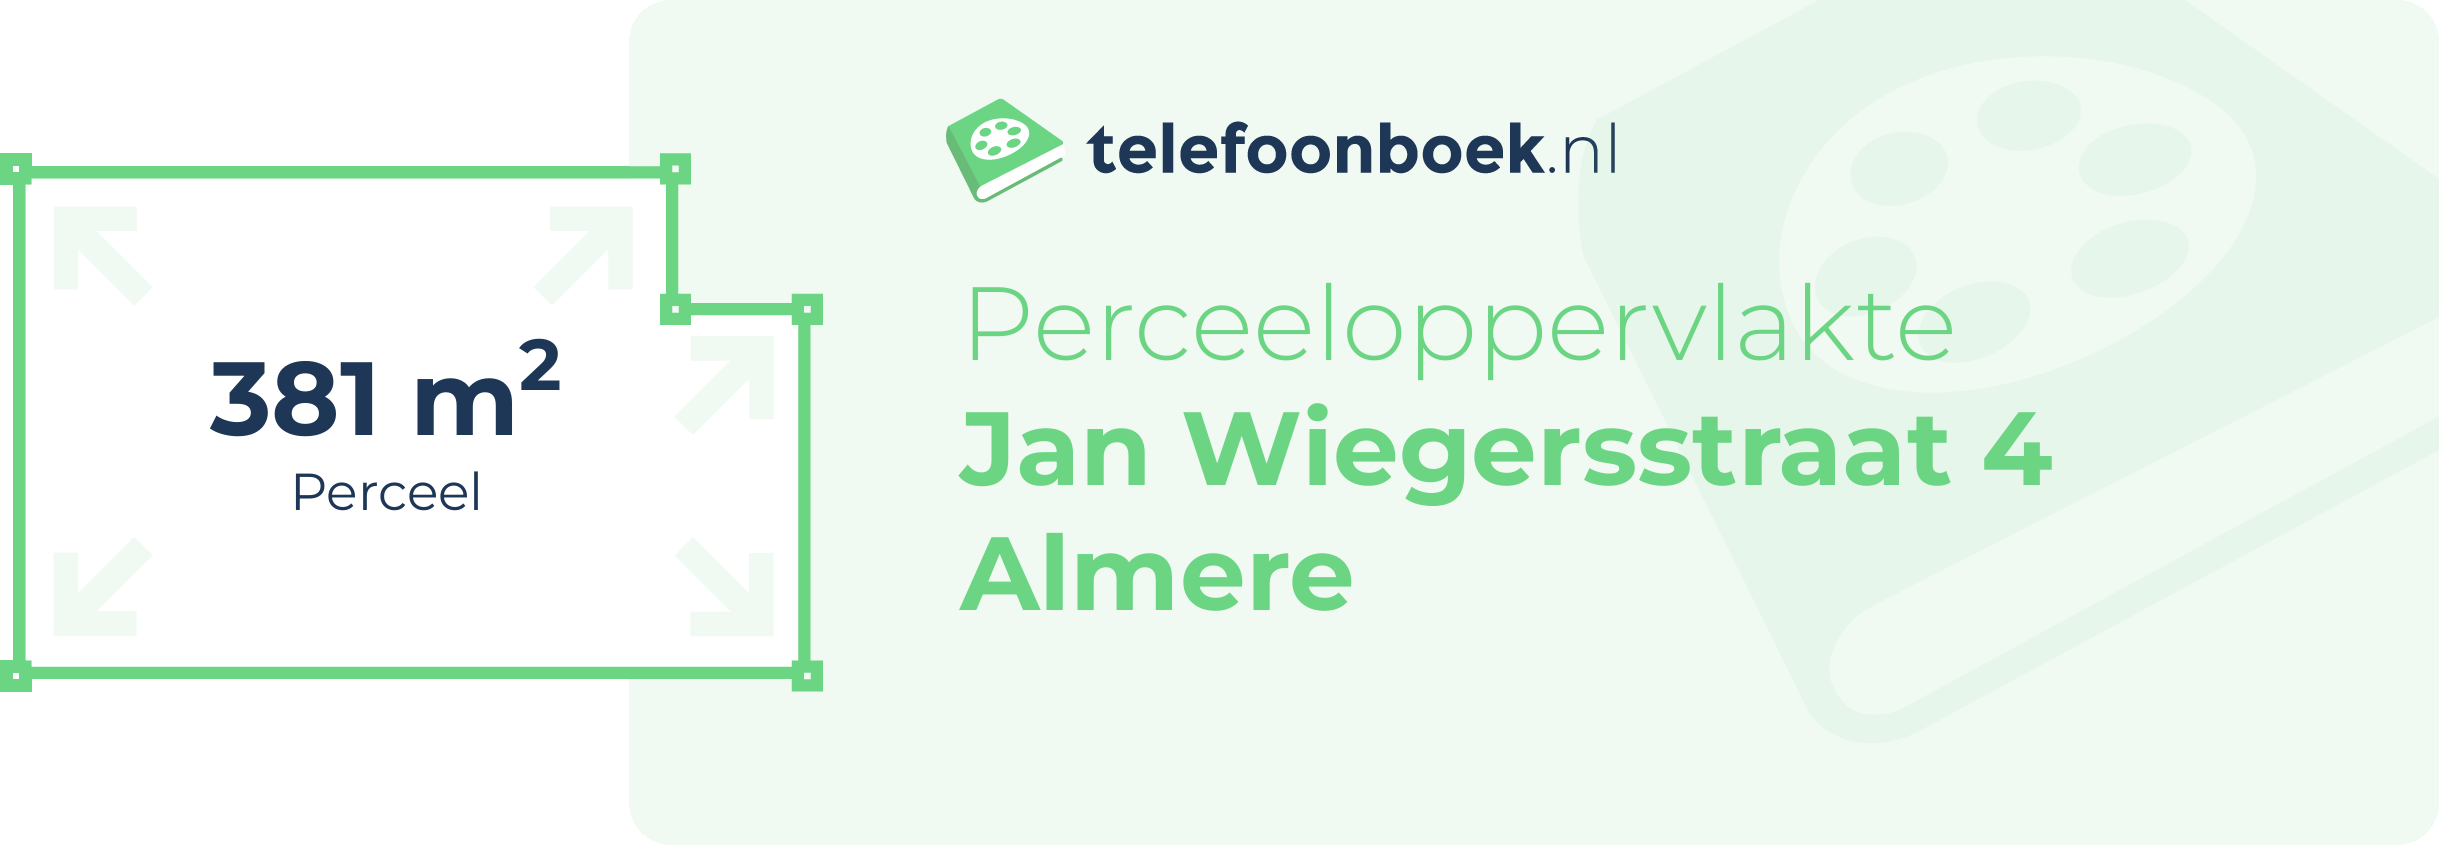 Perceeloppervlakte Jan Wiegersstraat 4 Almere